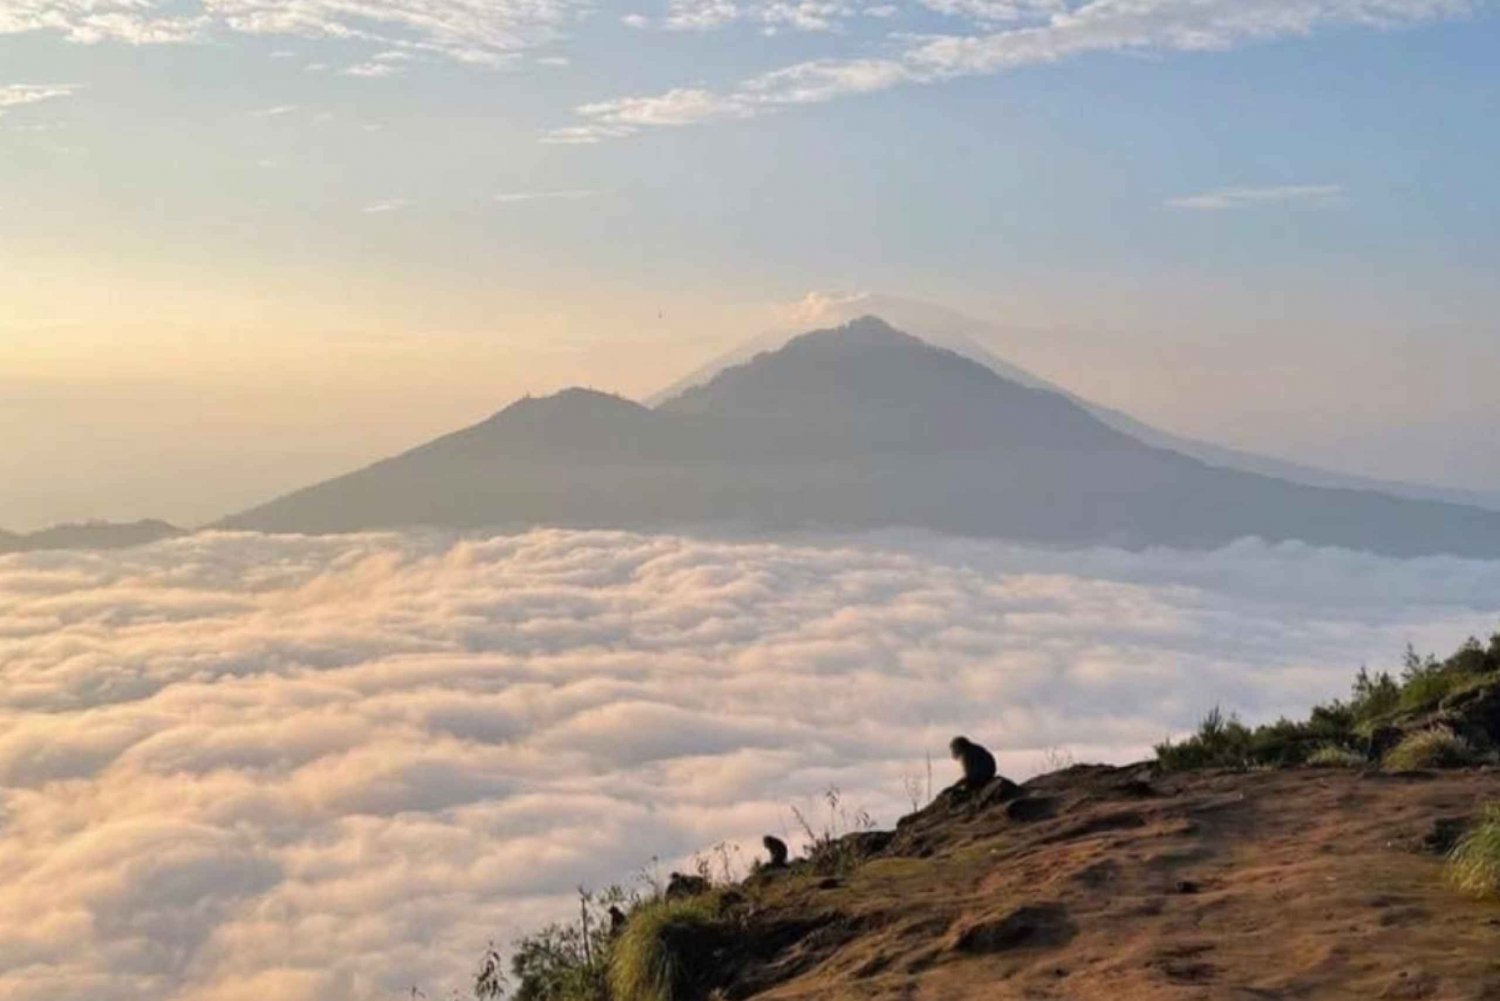 Slap af ved at bestige Mount Batur